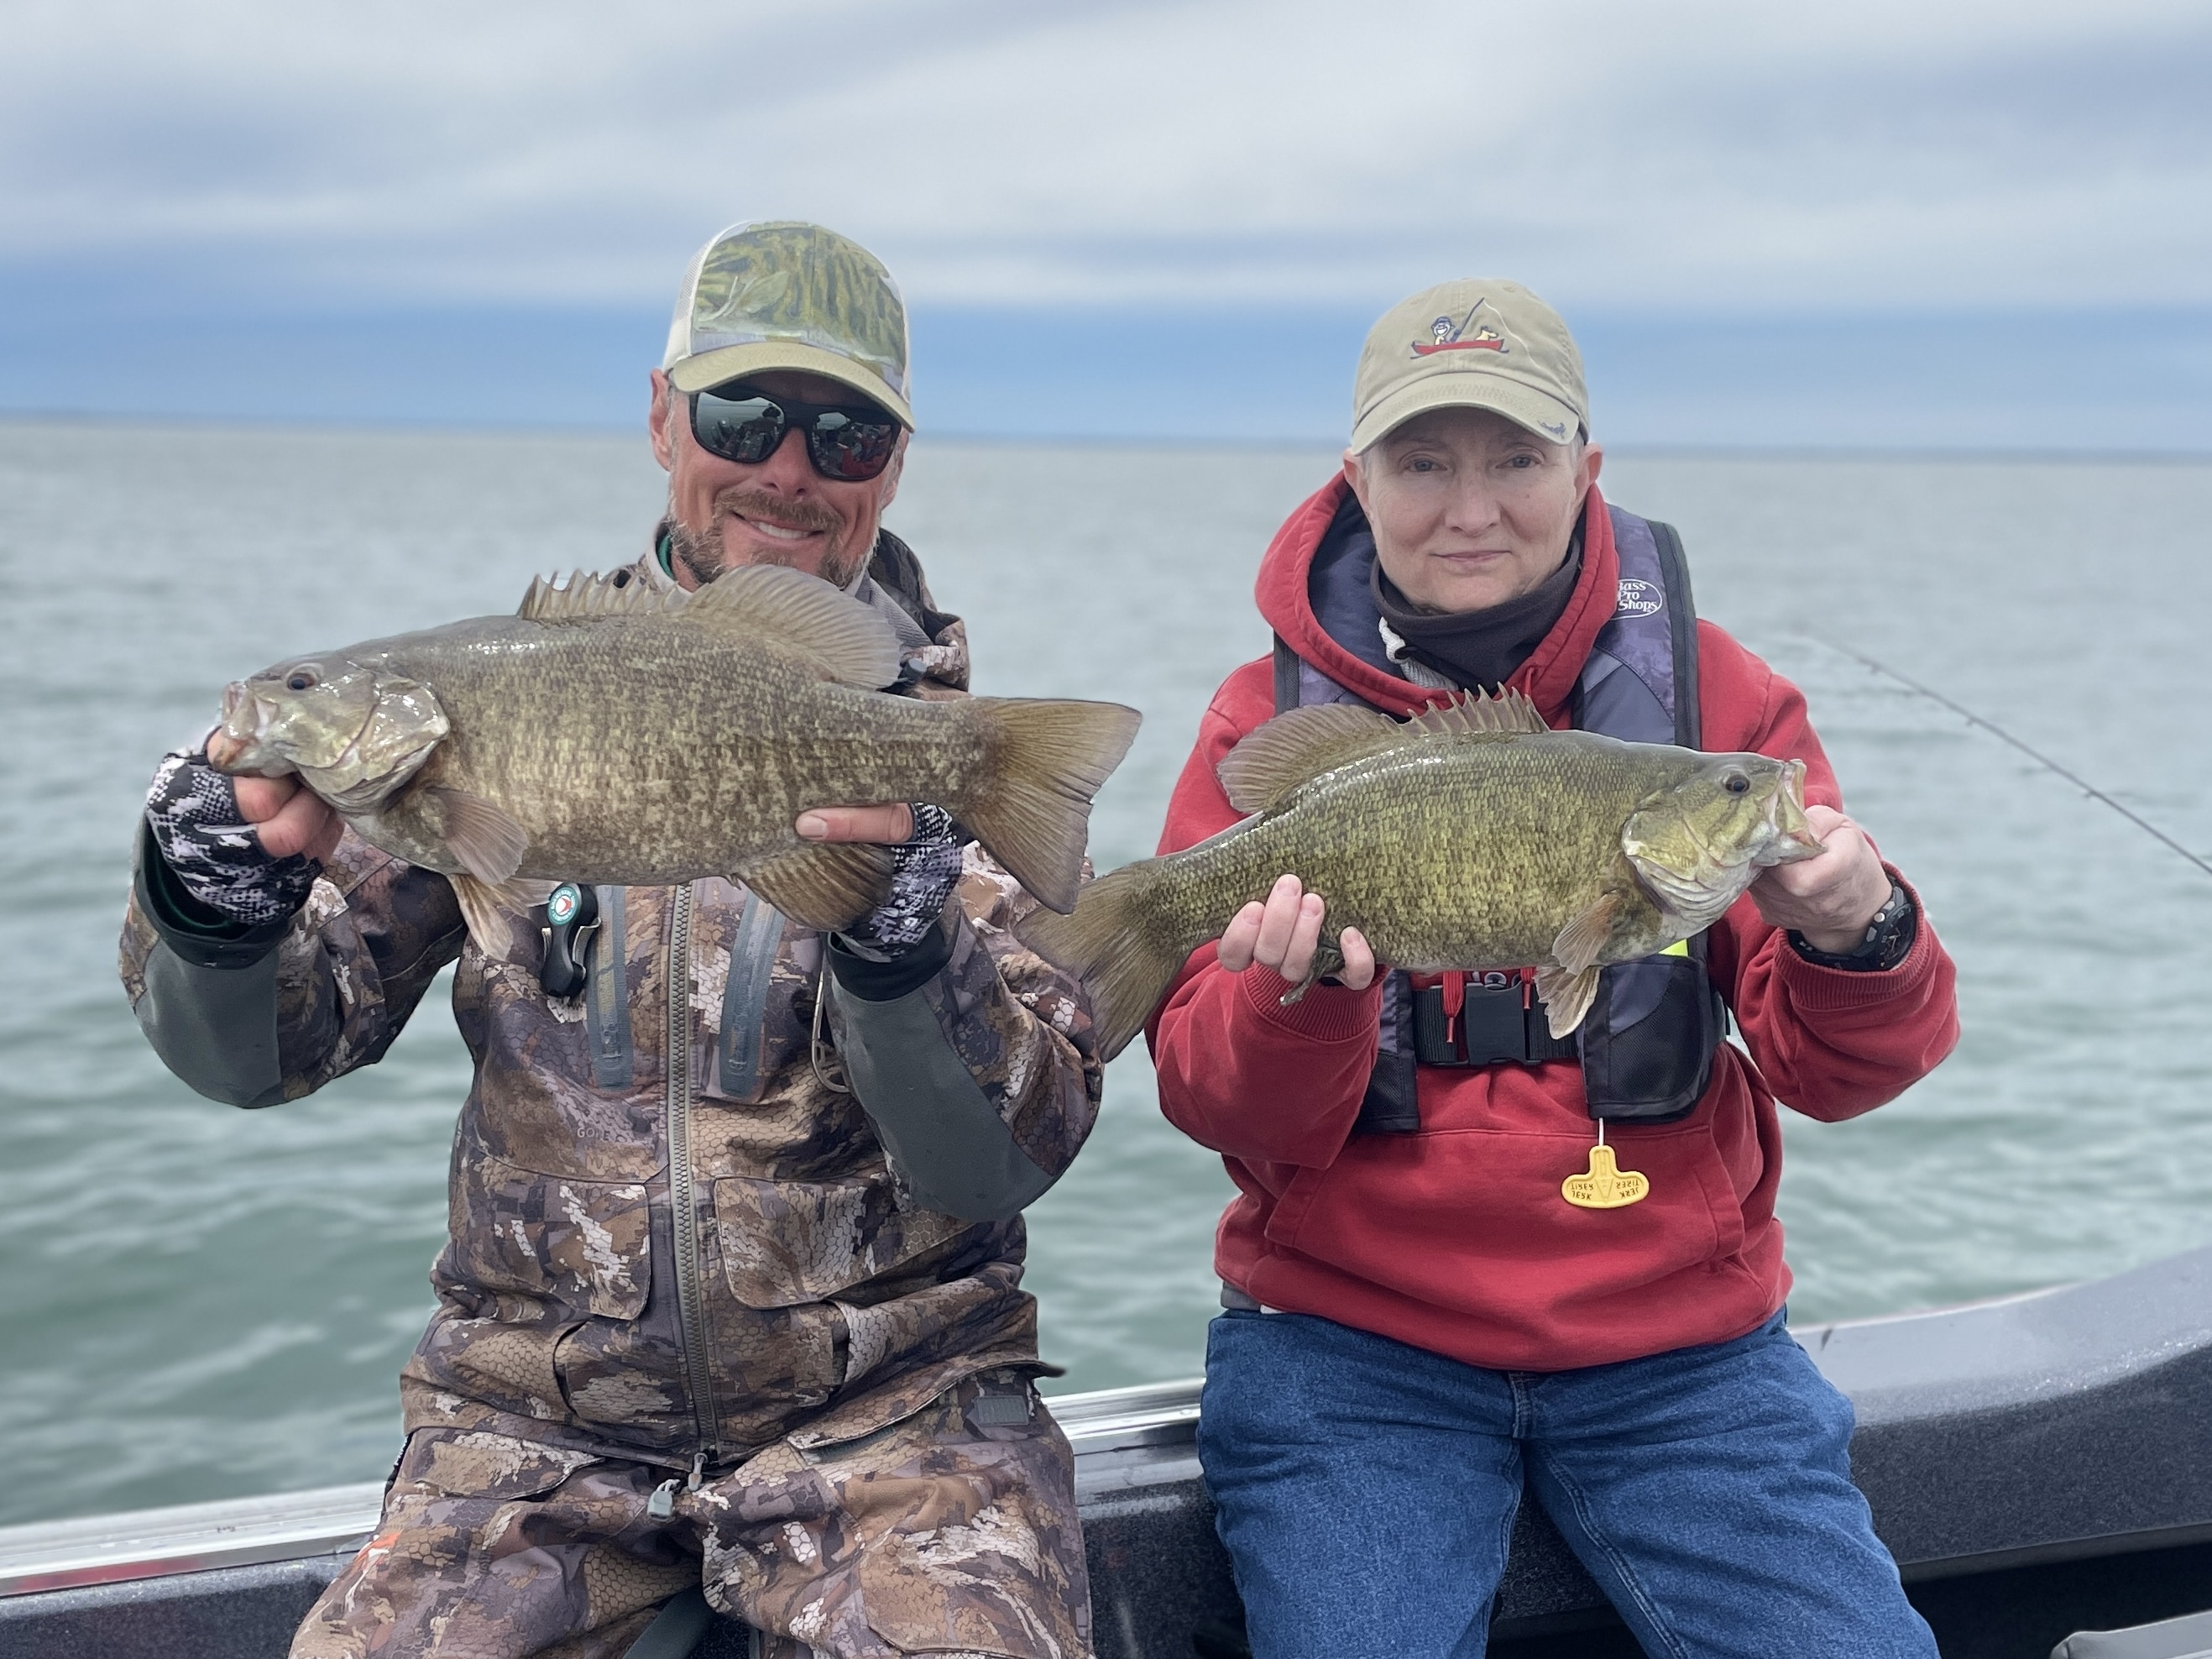 20220518 175415573 iOS - Buffalo NY Fishing Report - 05/22/2022